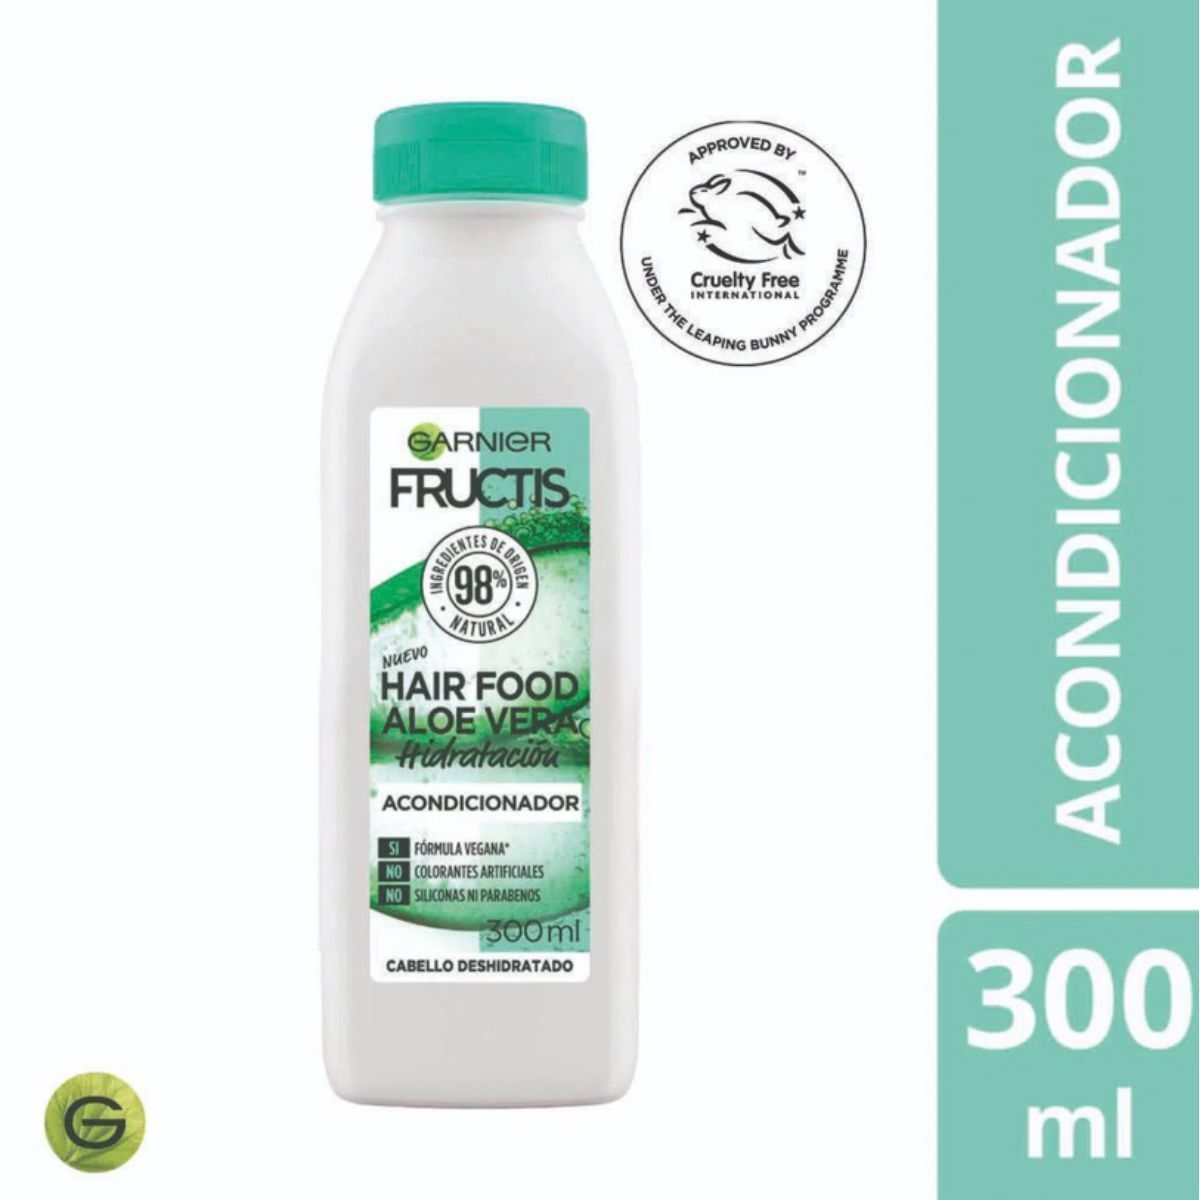 Fructis Hair Food Aloe Acondicionador 300ml